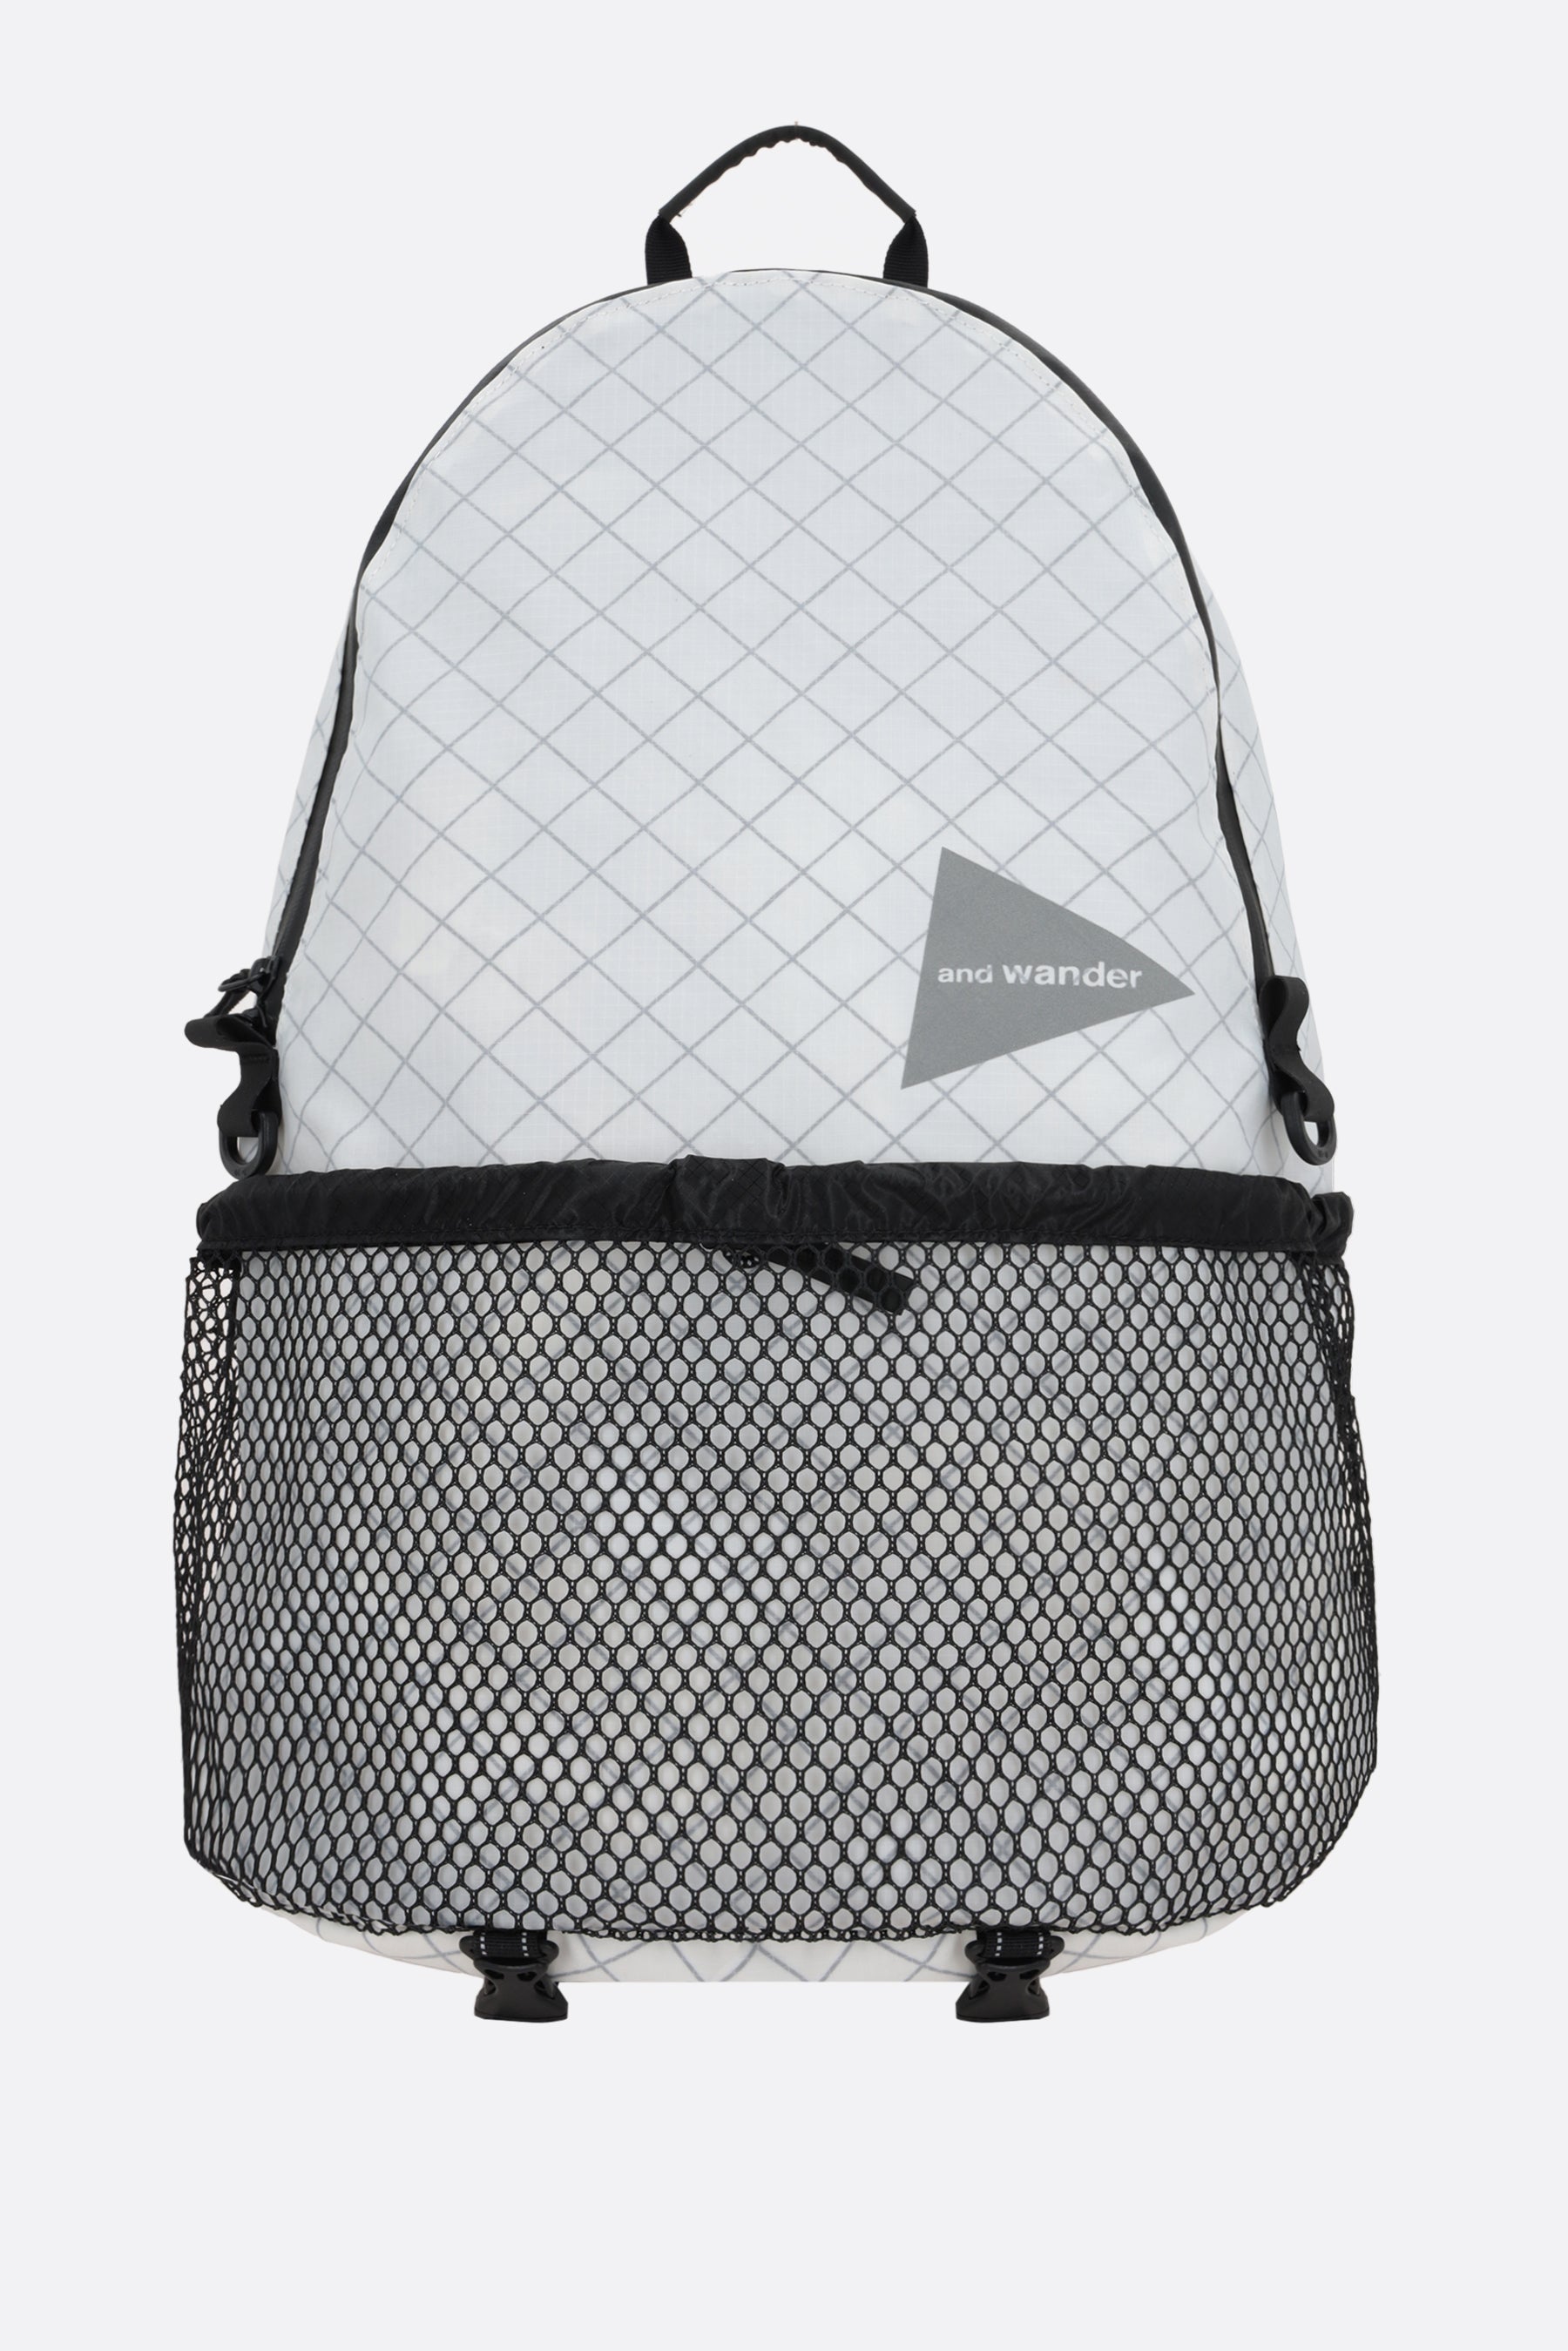 20L backpack in ECOPAK nylon